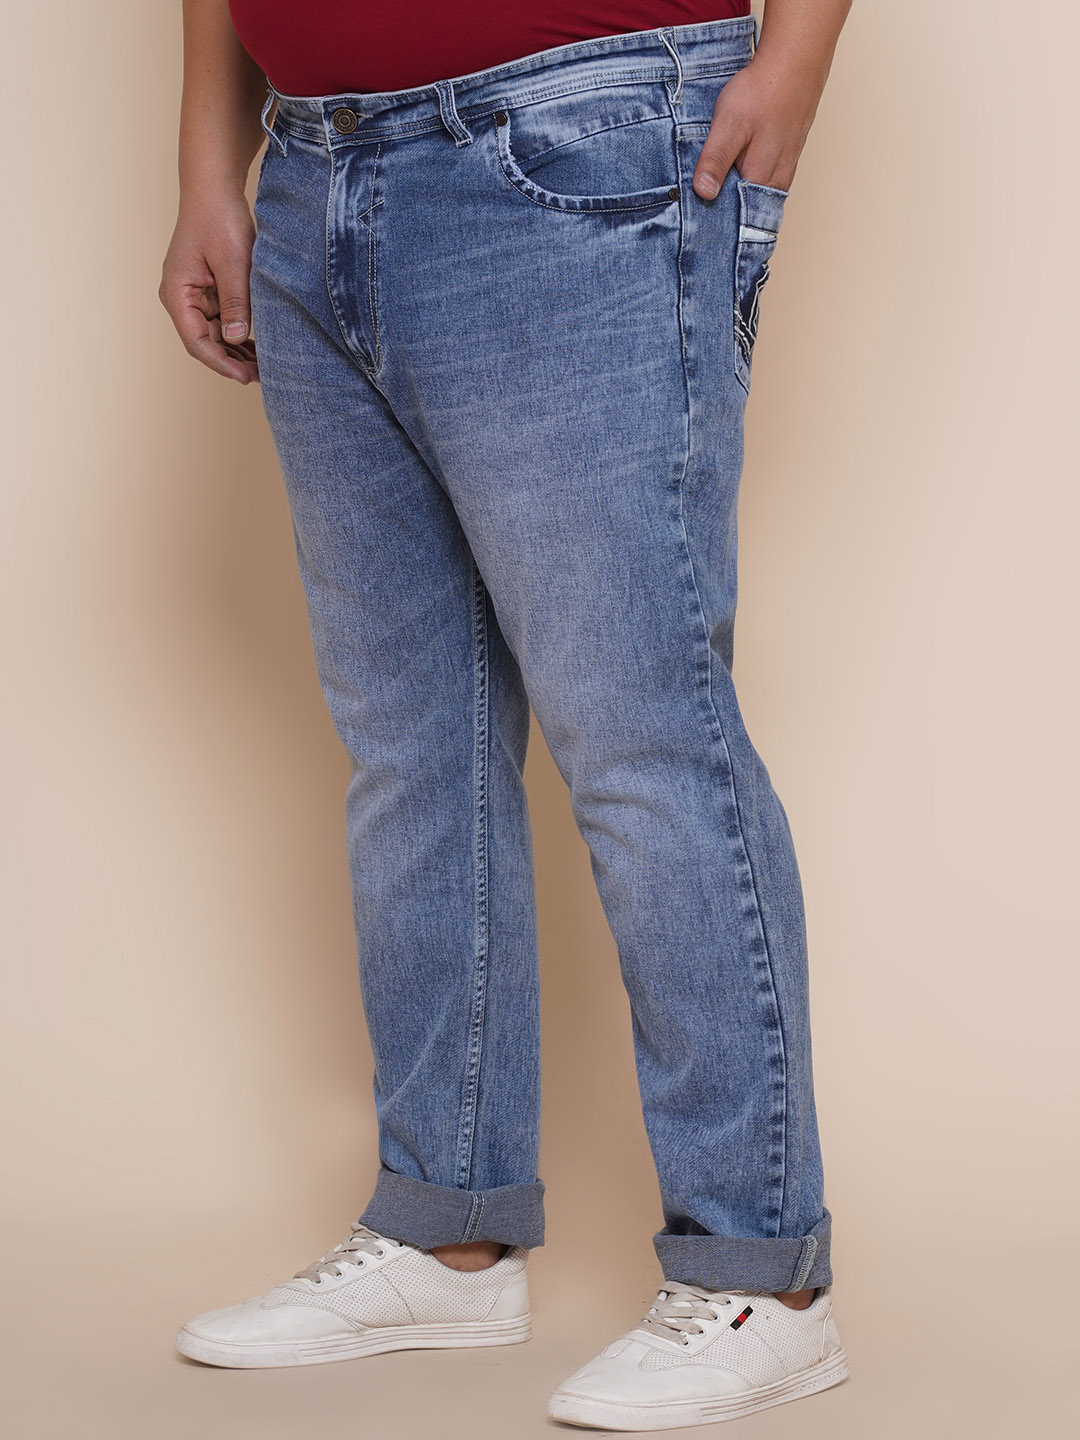 bottomwear/jeans/JPJ27001/jpj27001-4.jpg